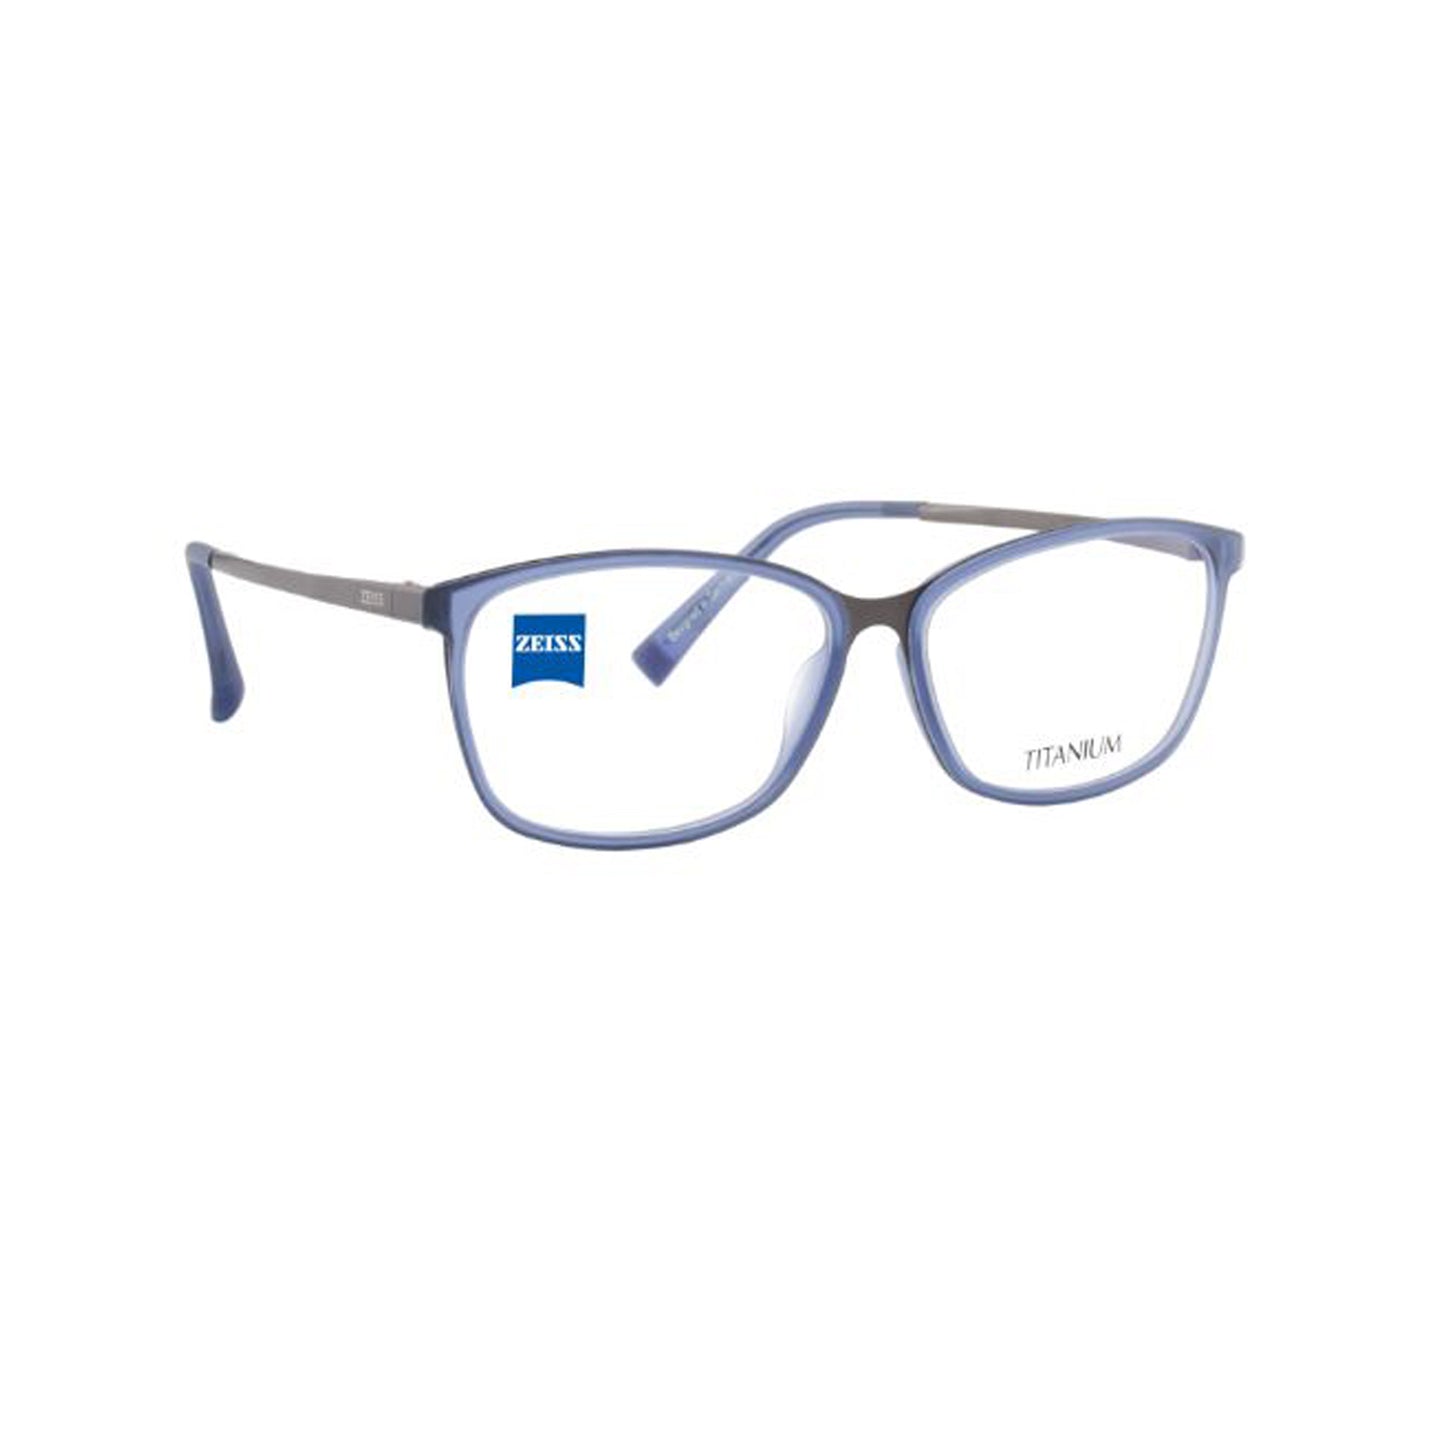 Zeiss Eyewear Blue Cat-Eye Metal Full Rim Eyeglasses. Made in Germany ZS30015-Y22